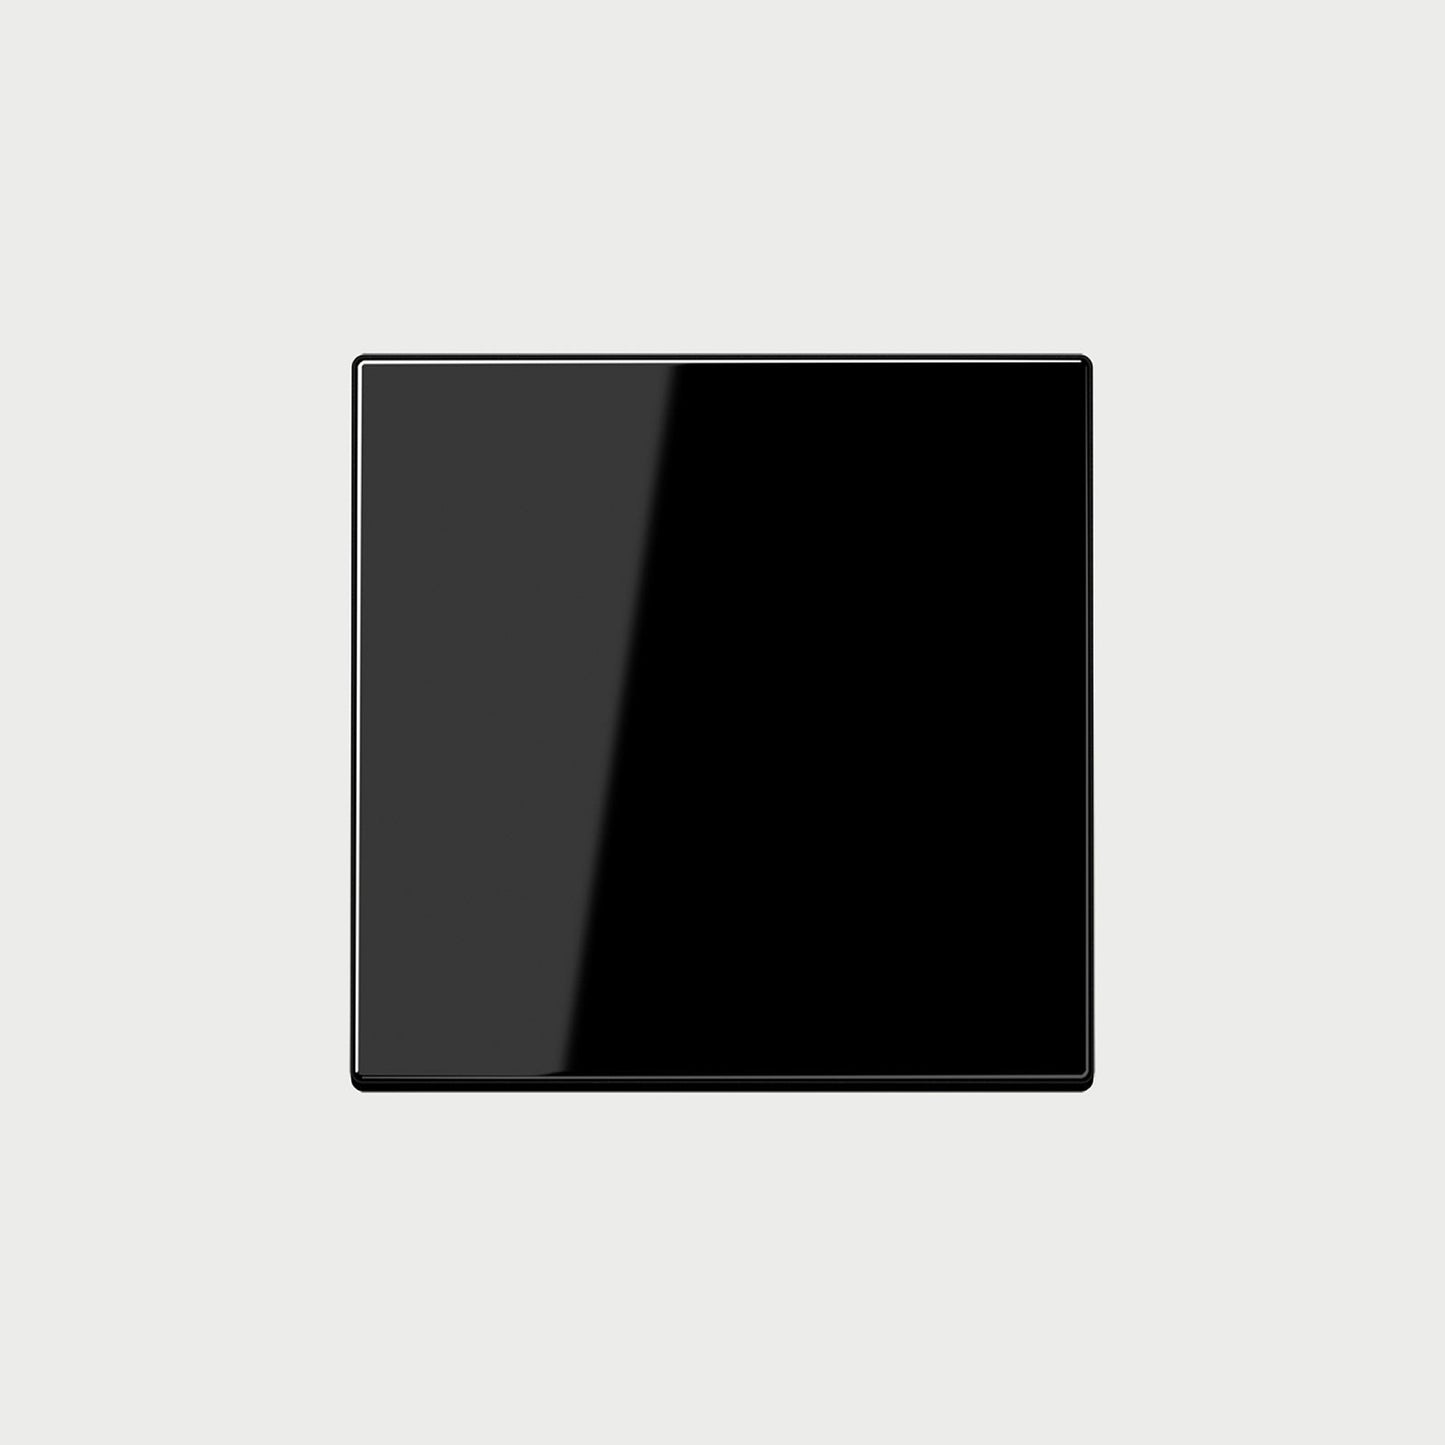 Ls1700 (Plastic) Black Cover